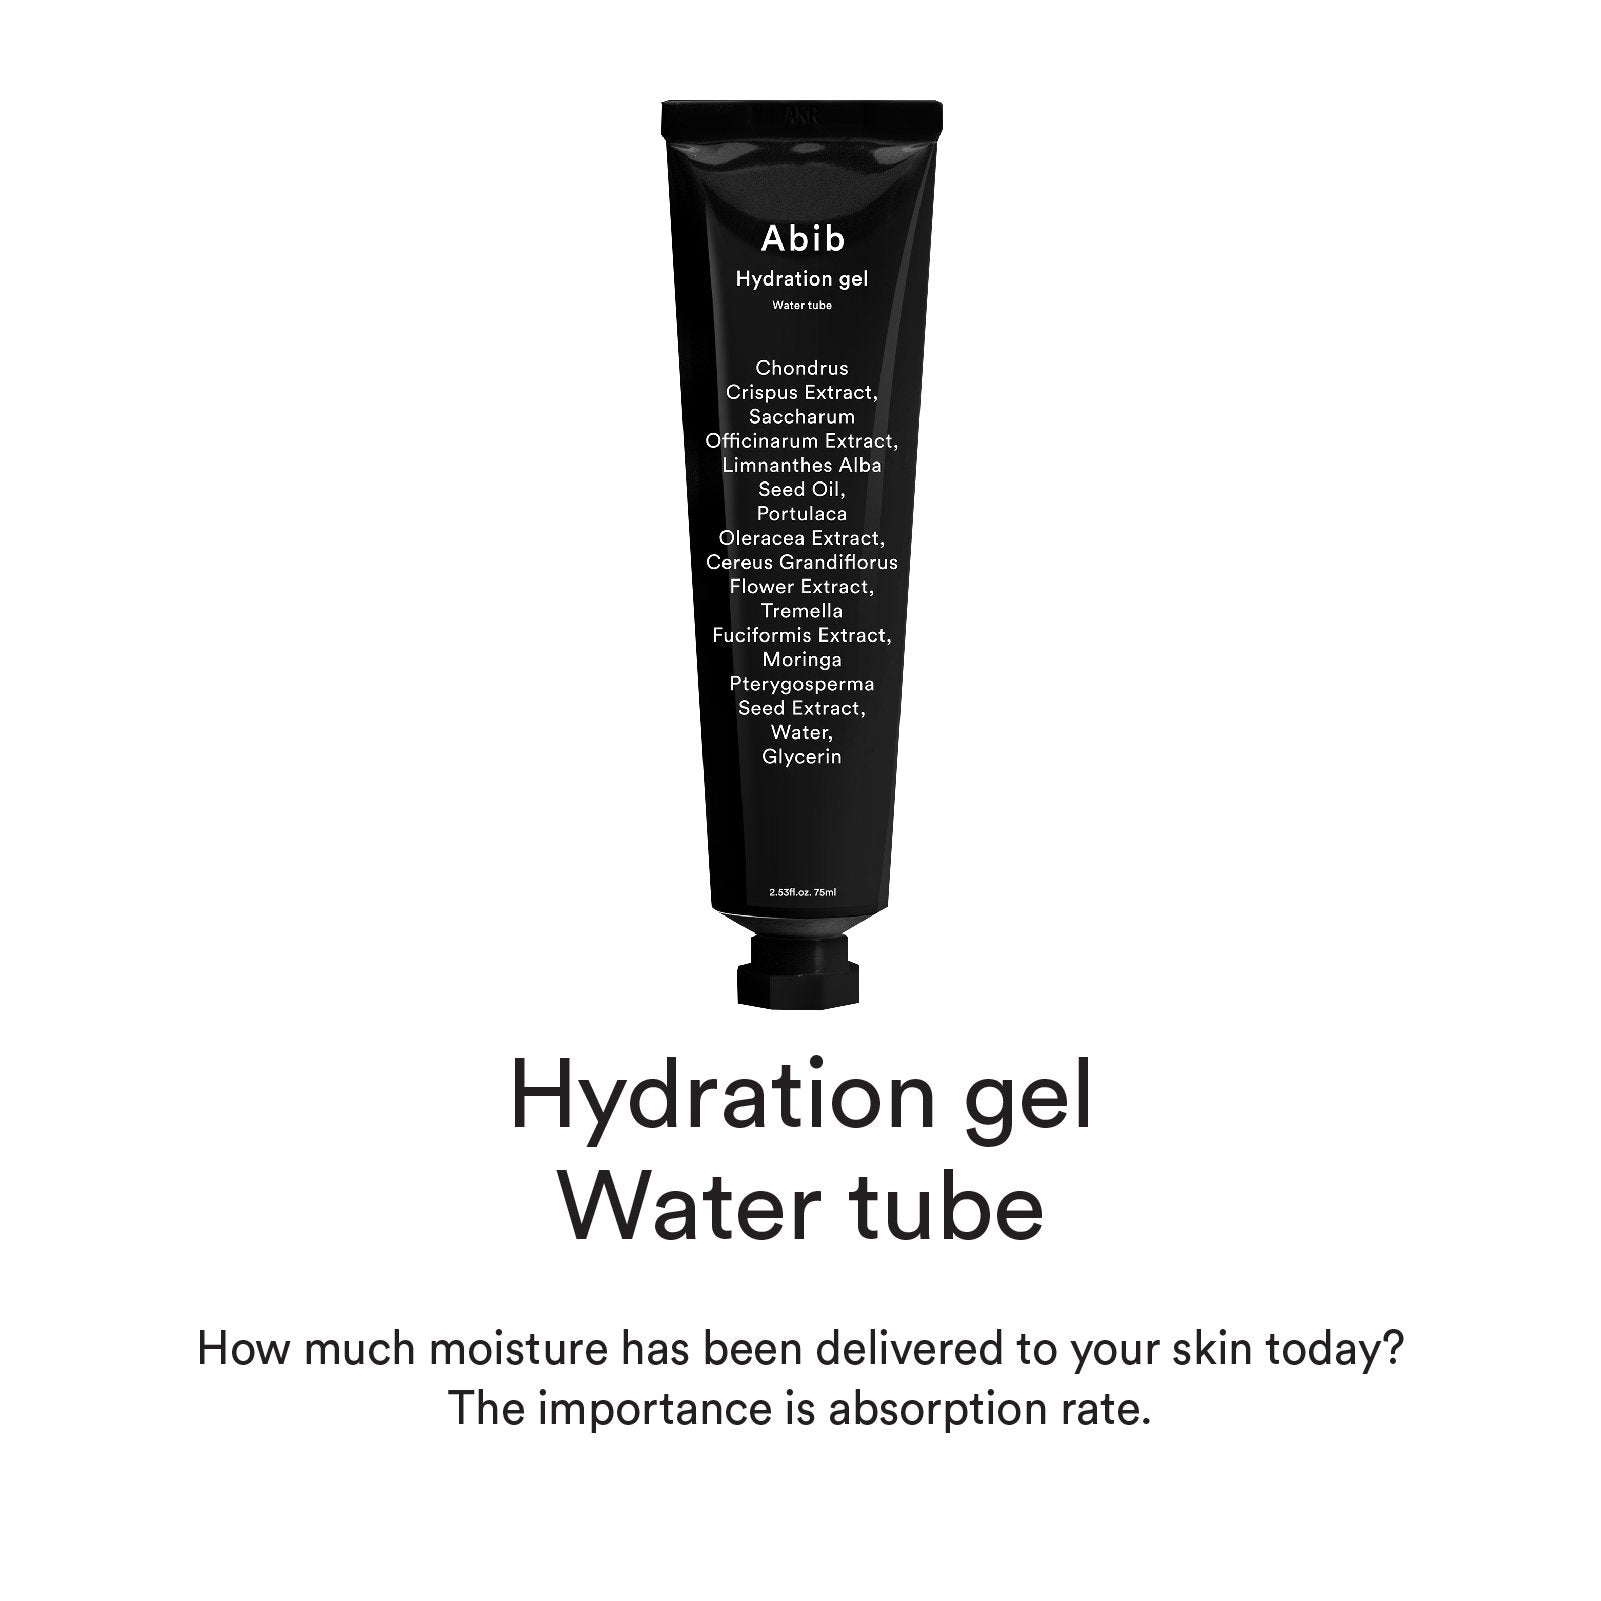 Abib - Hydration Gel Water tube